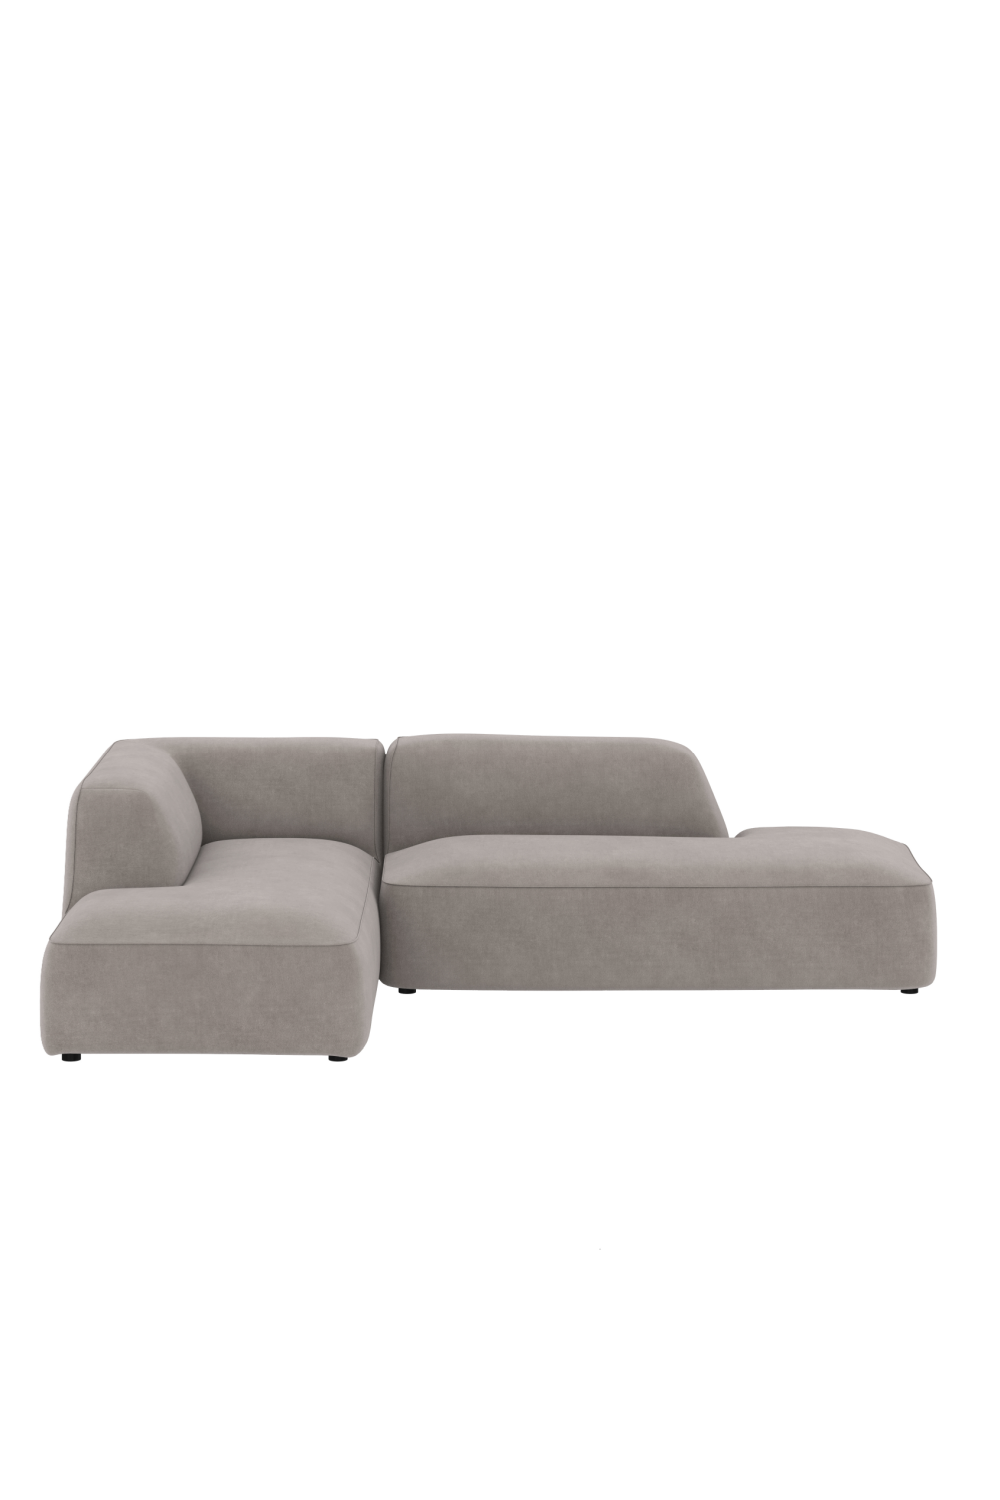 Upholstered Left Modular Sofa | Dome Deco Cali | Oroa